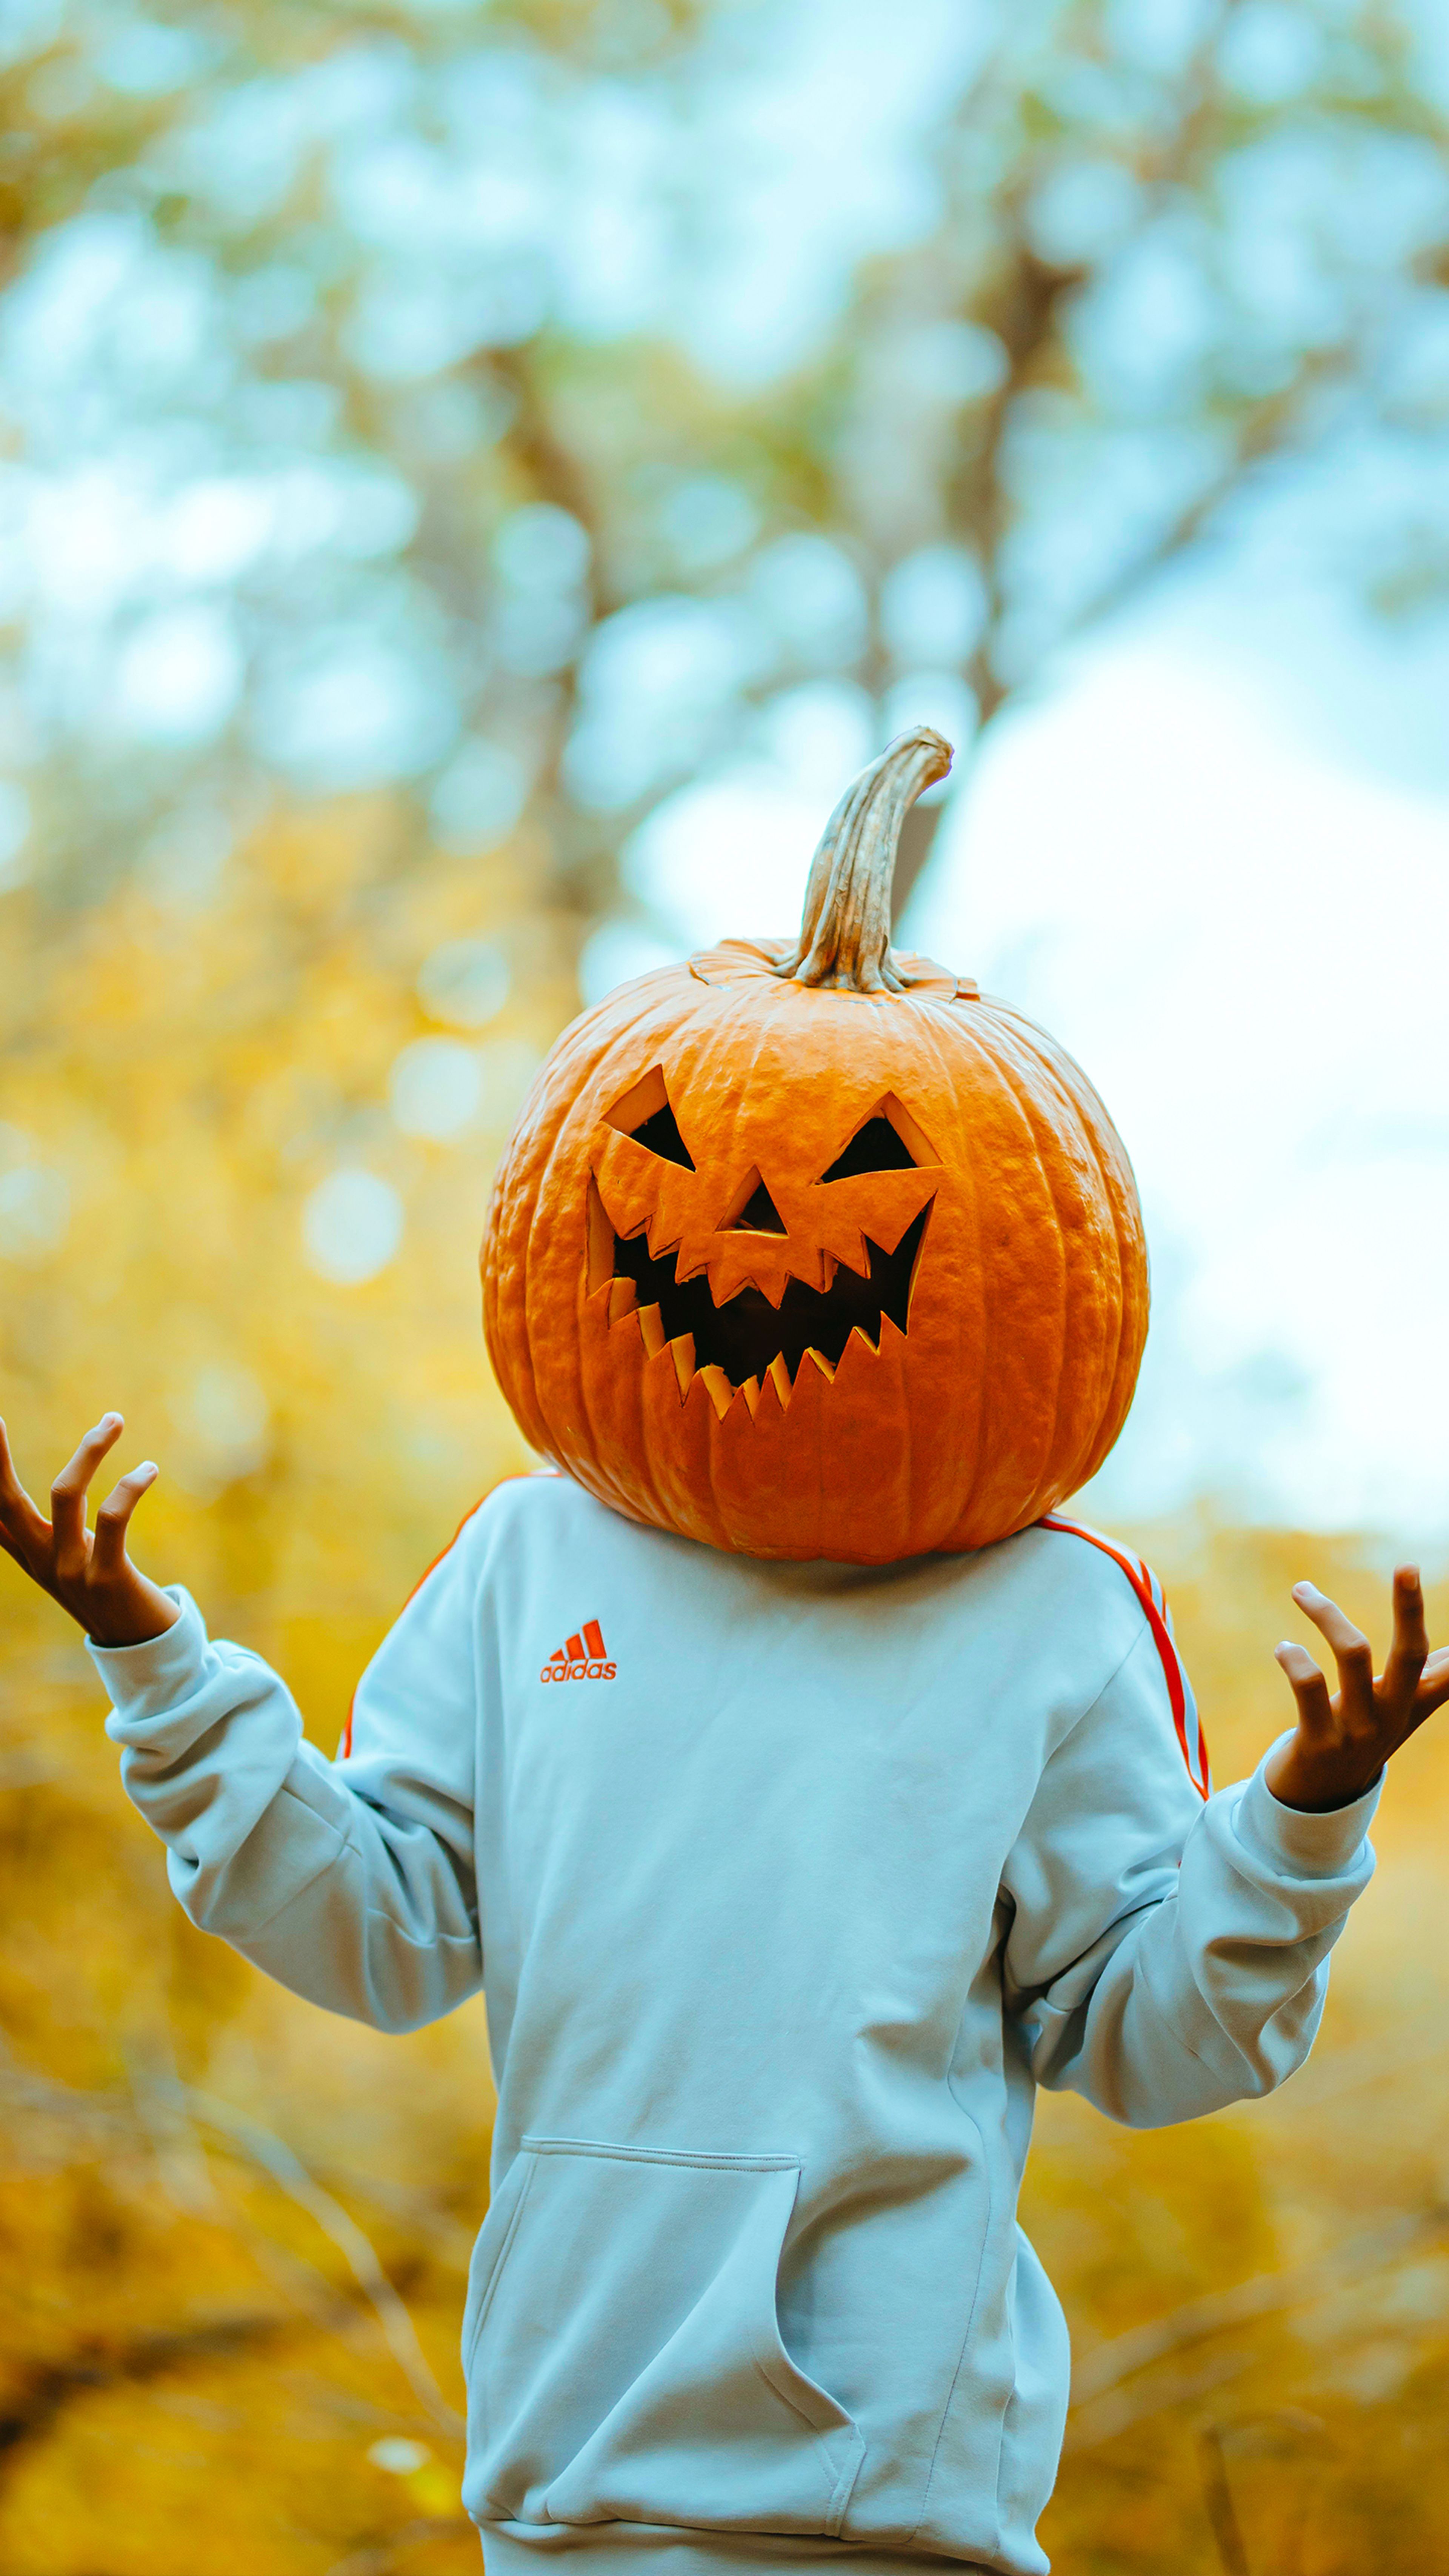 Prepara tu móvil para Halloween, los 12 mejores fondos de pantalla |  Computer Hoy